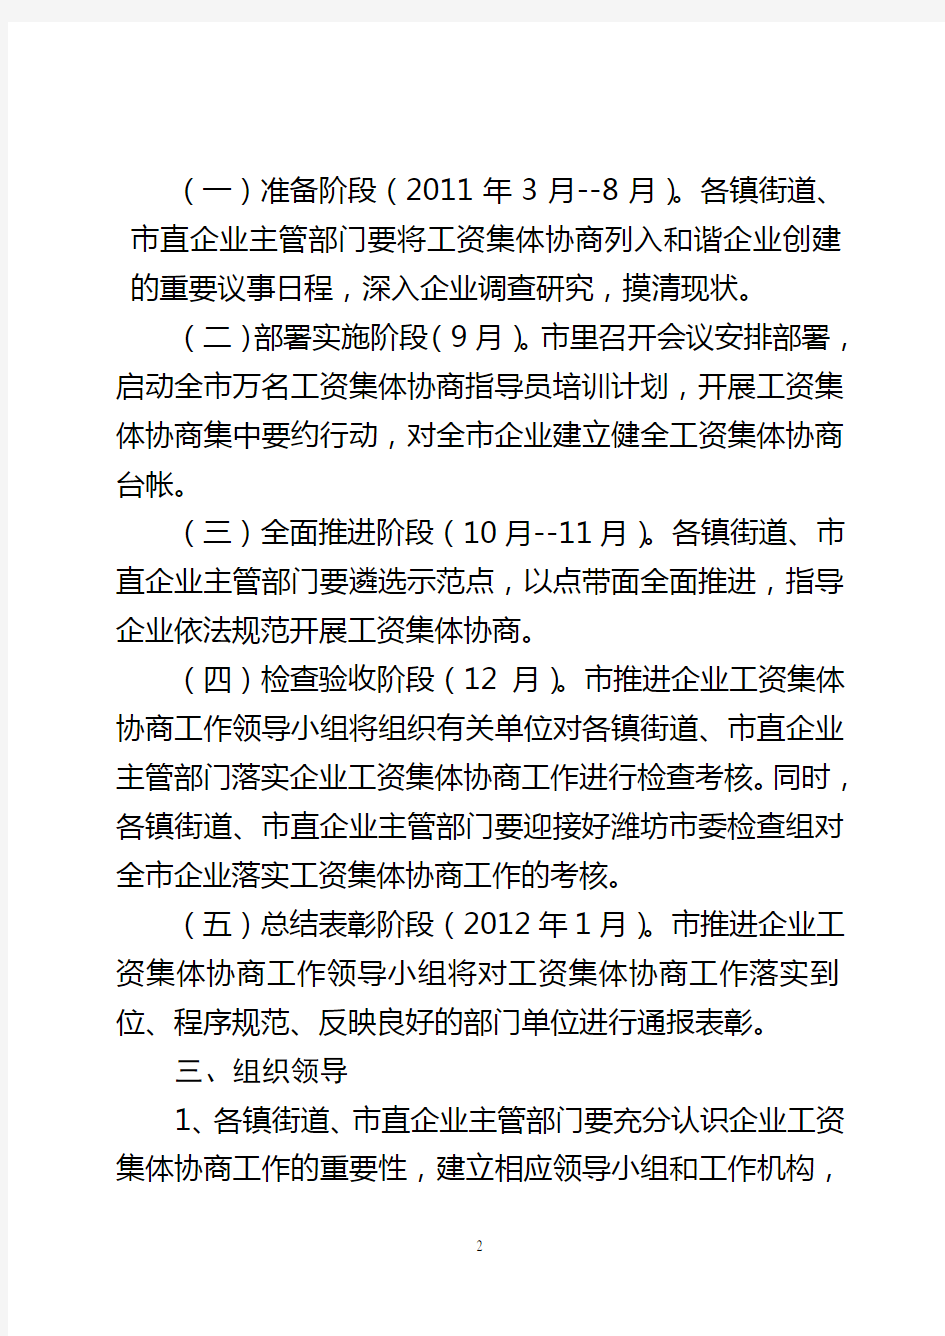 寿光市2011年推进企业工资集体协商工作实施方案(10.18)